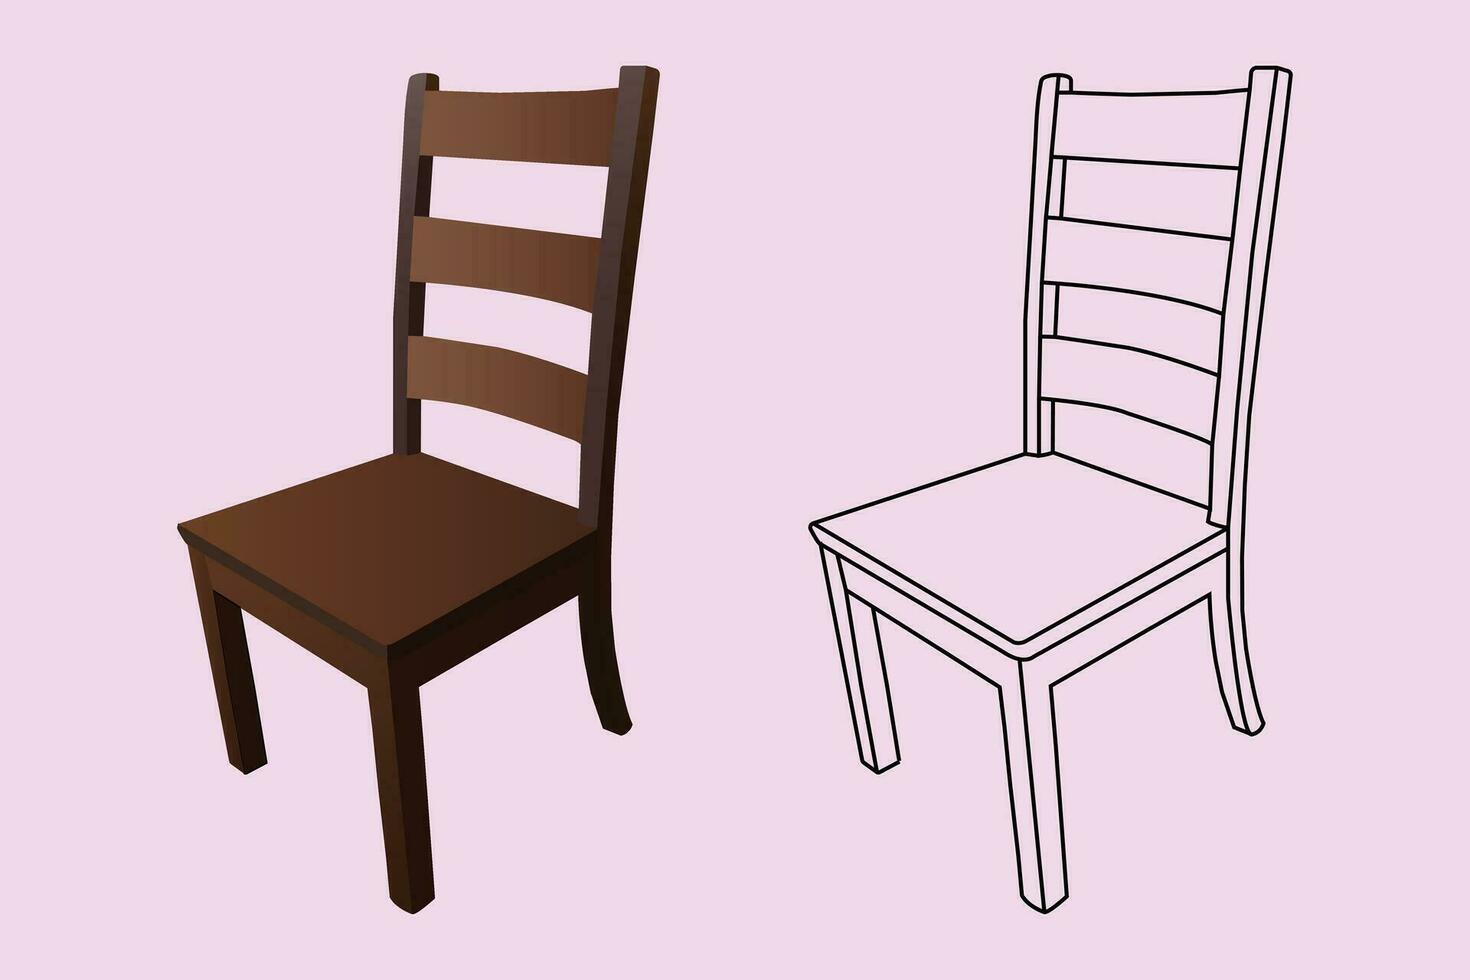 classique en bois chaise dans dessin animé style isolé sur vecteur illustration